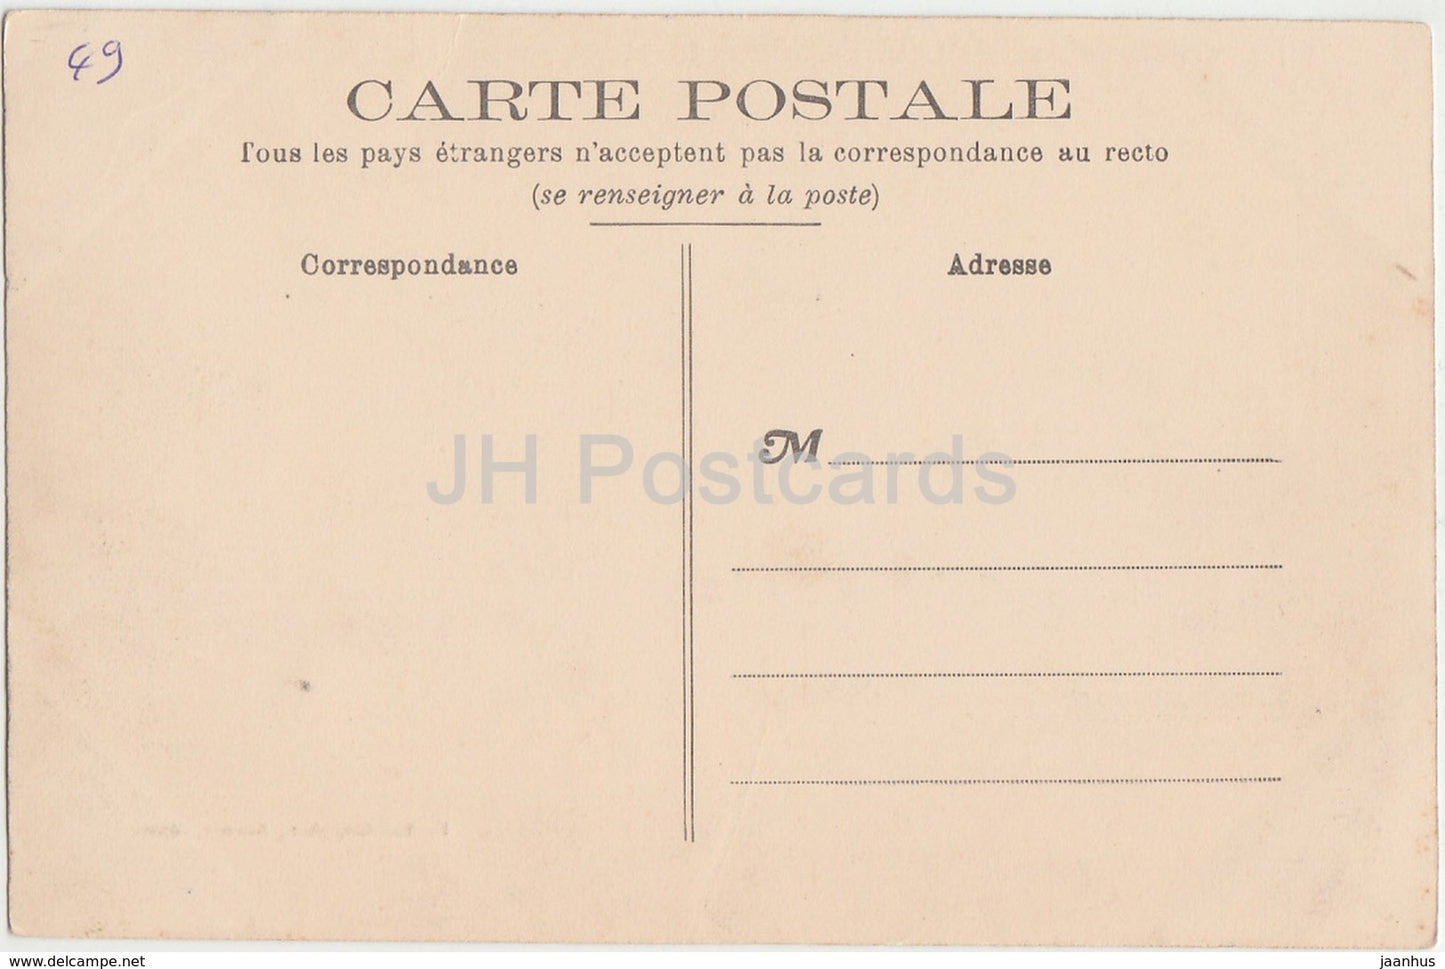 Environs de Saumur - Chateau de Salvert - par Neuille - Schloss - 122 - alte Postkarte - Frankreich - unbenutzt